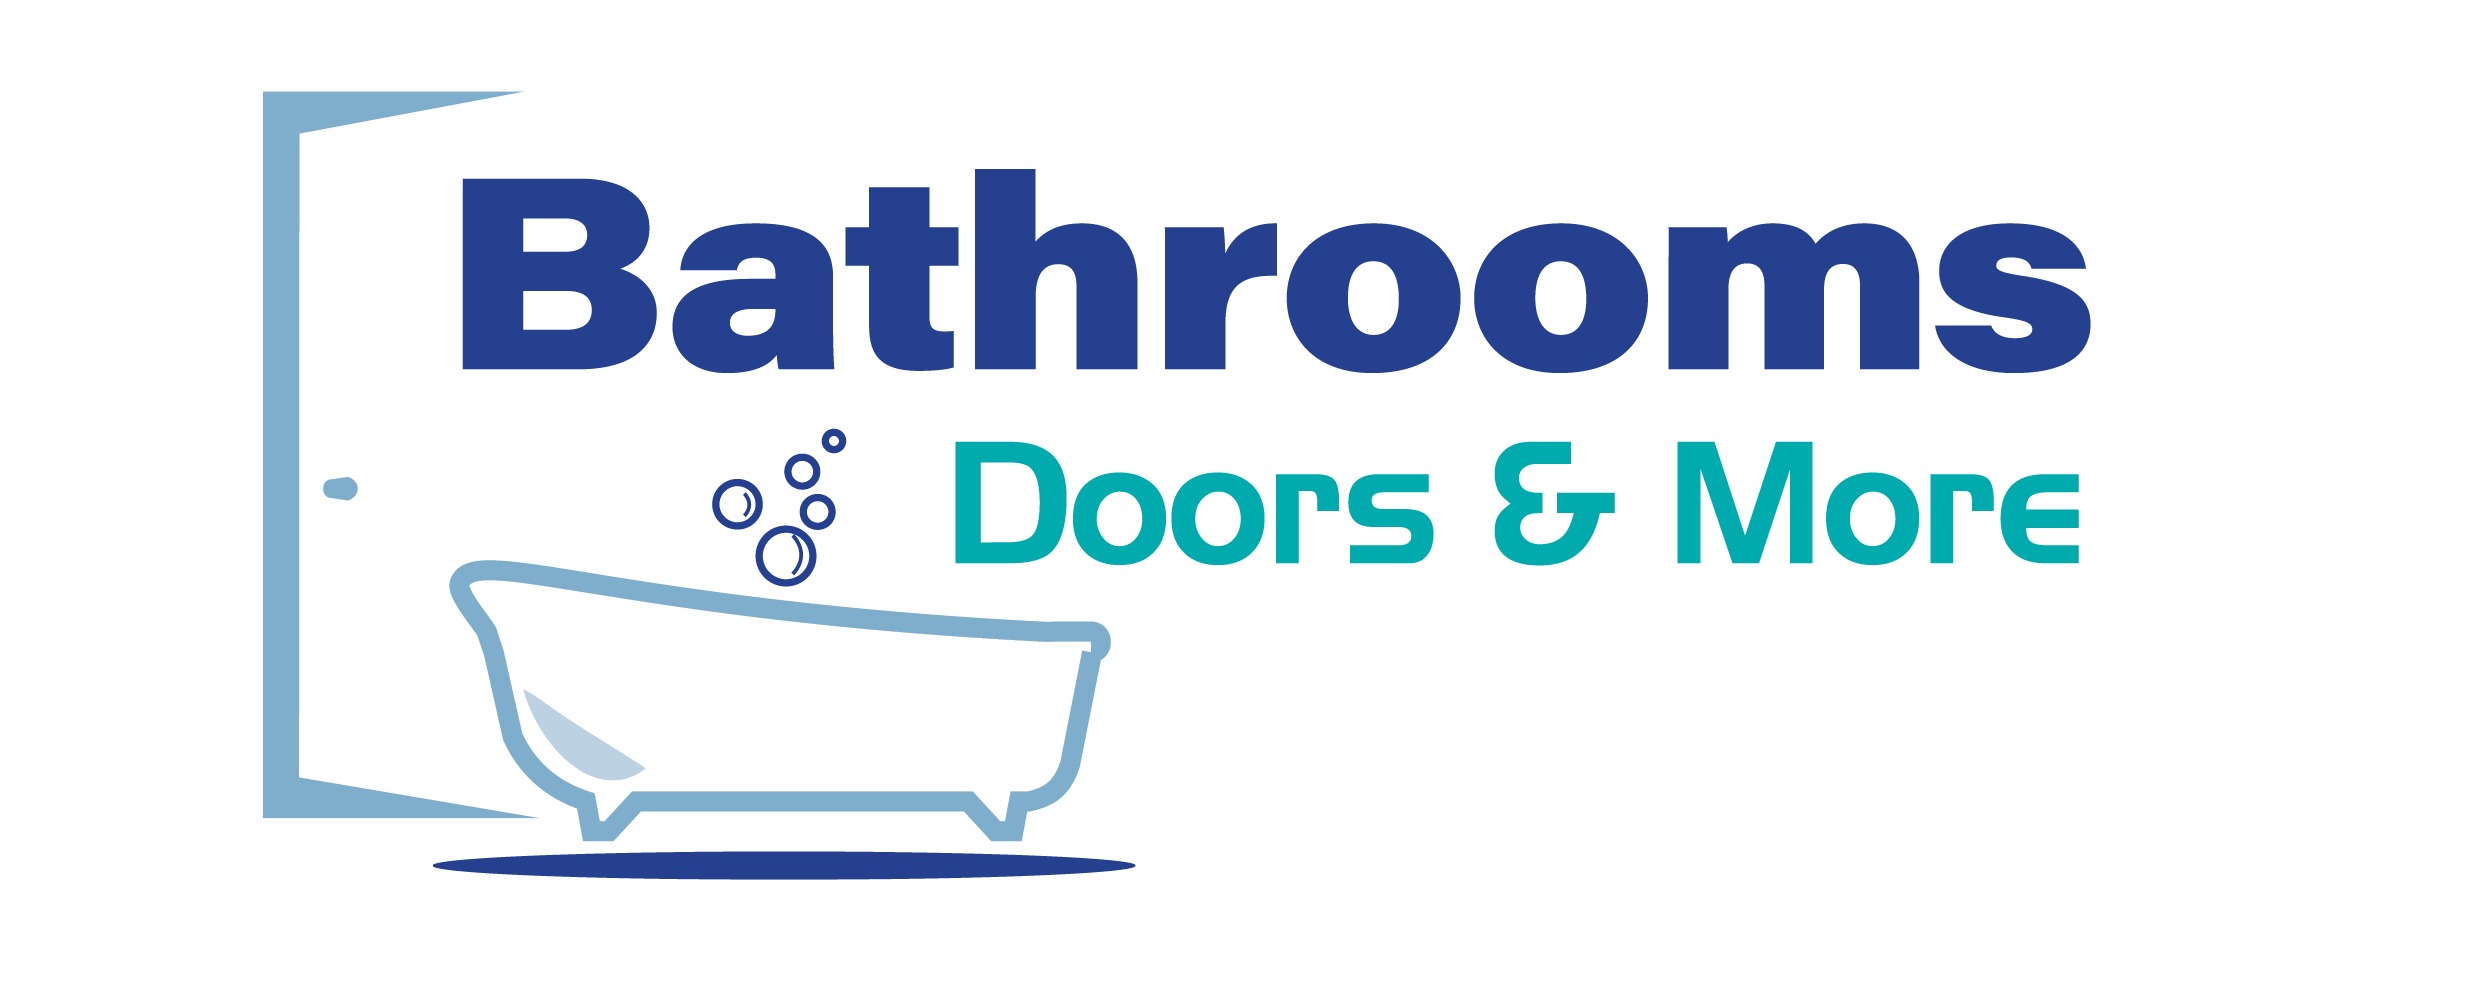 Bathrooms Doors & More